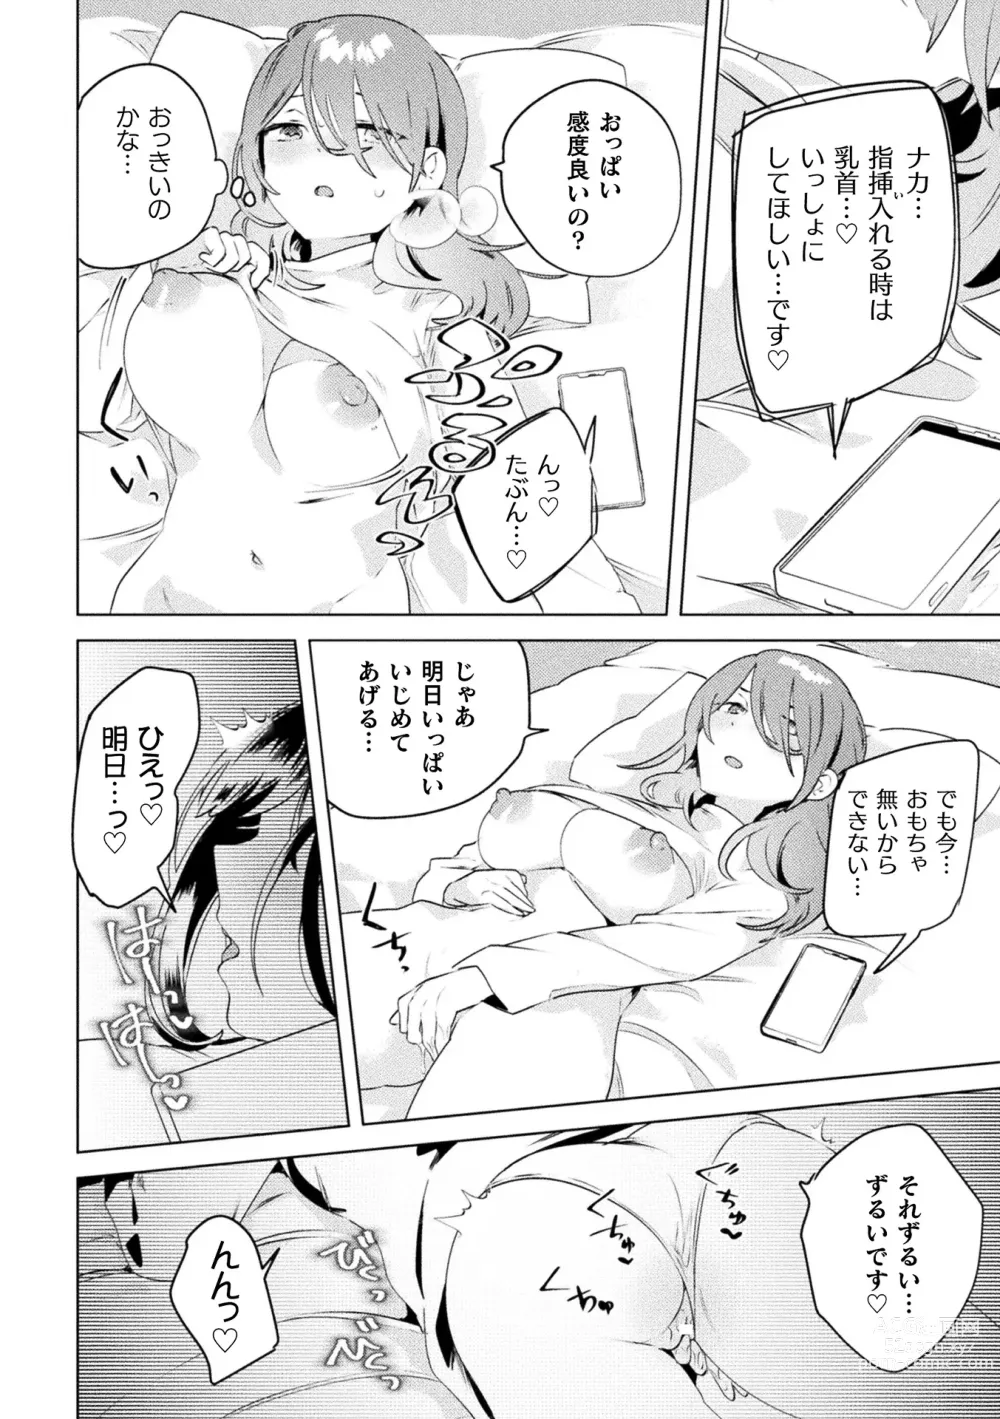 Page 6 of manga 2D Comic Magazine Mamakatsu Yuri Ecchi Vol. 3